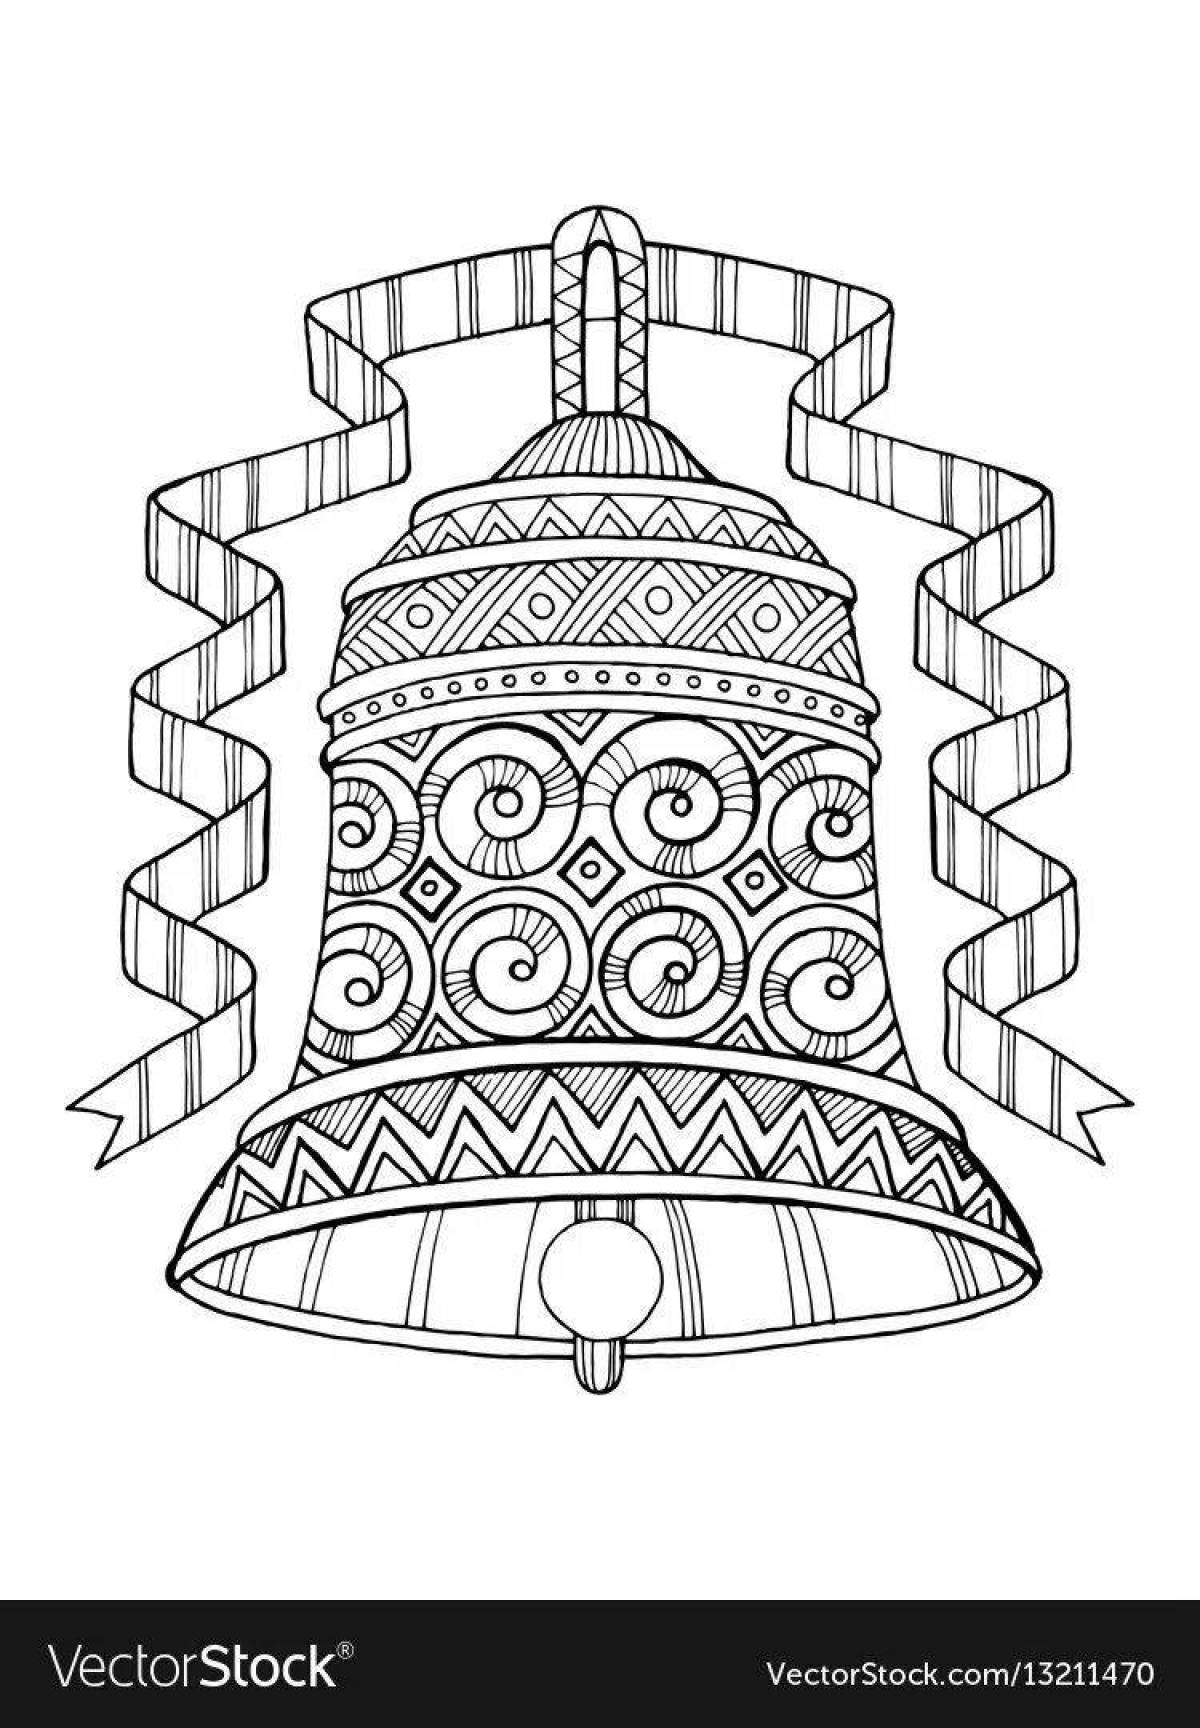 Раскраска монументальный царь-колокол